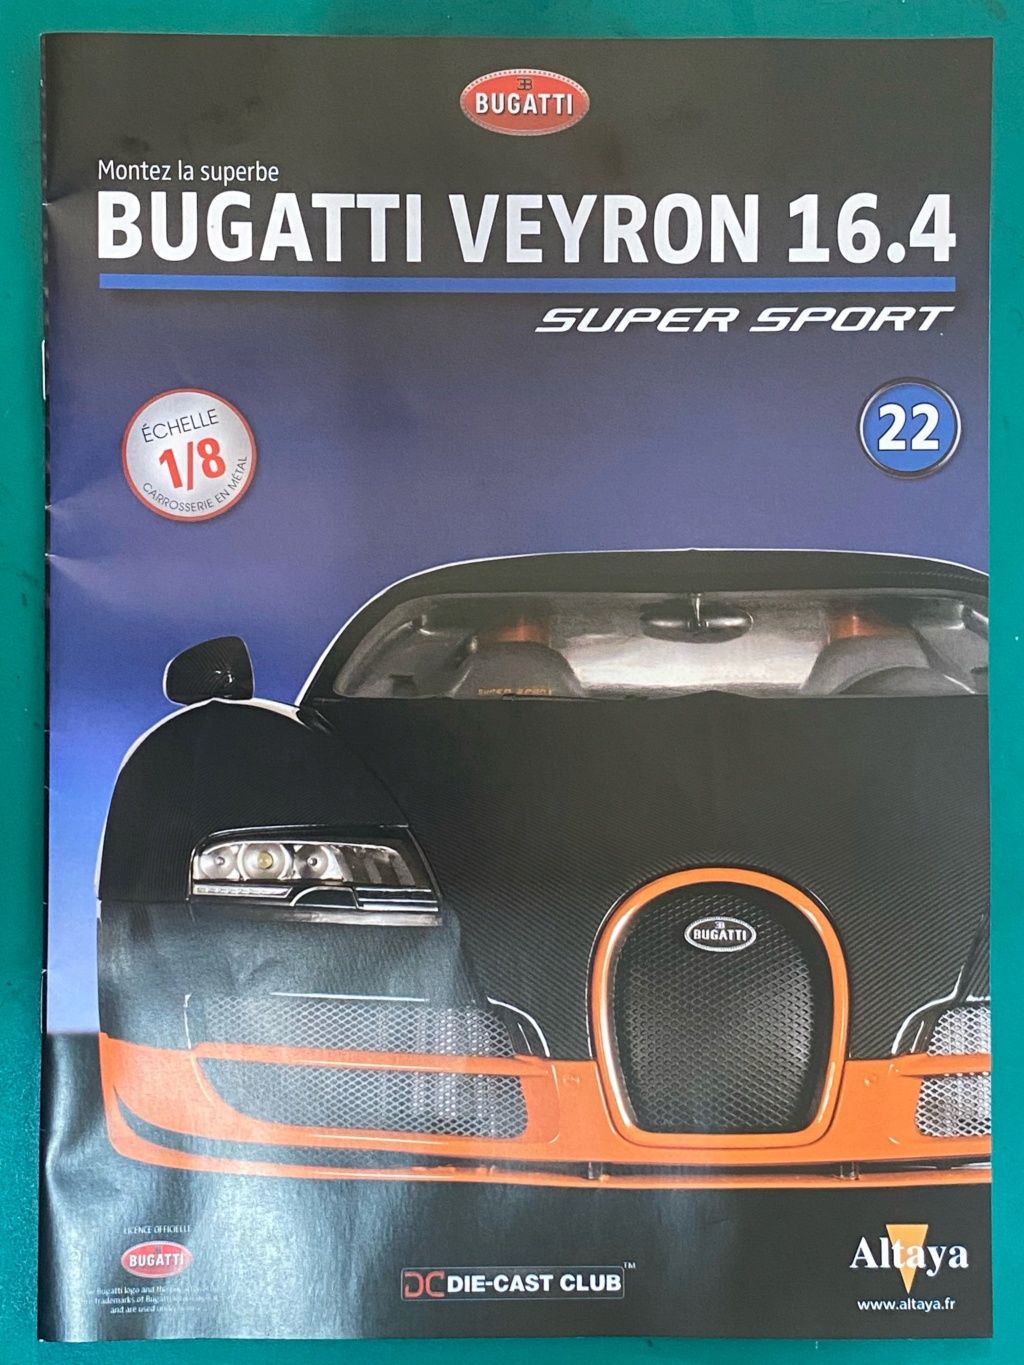 Bugatti Veyron [Altaya 1/8°] de Grenouille1954 - Page 2 Ebf10a10